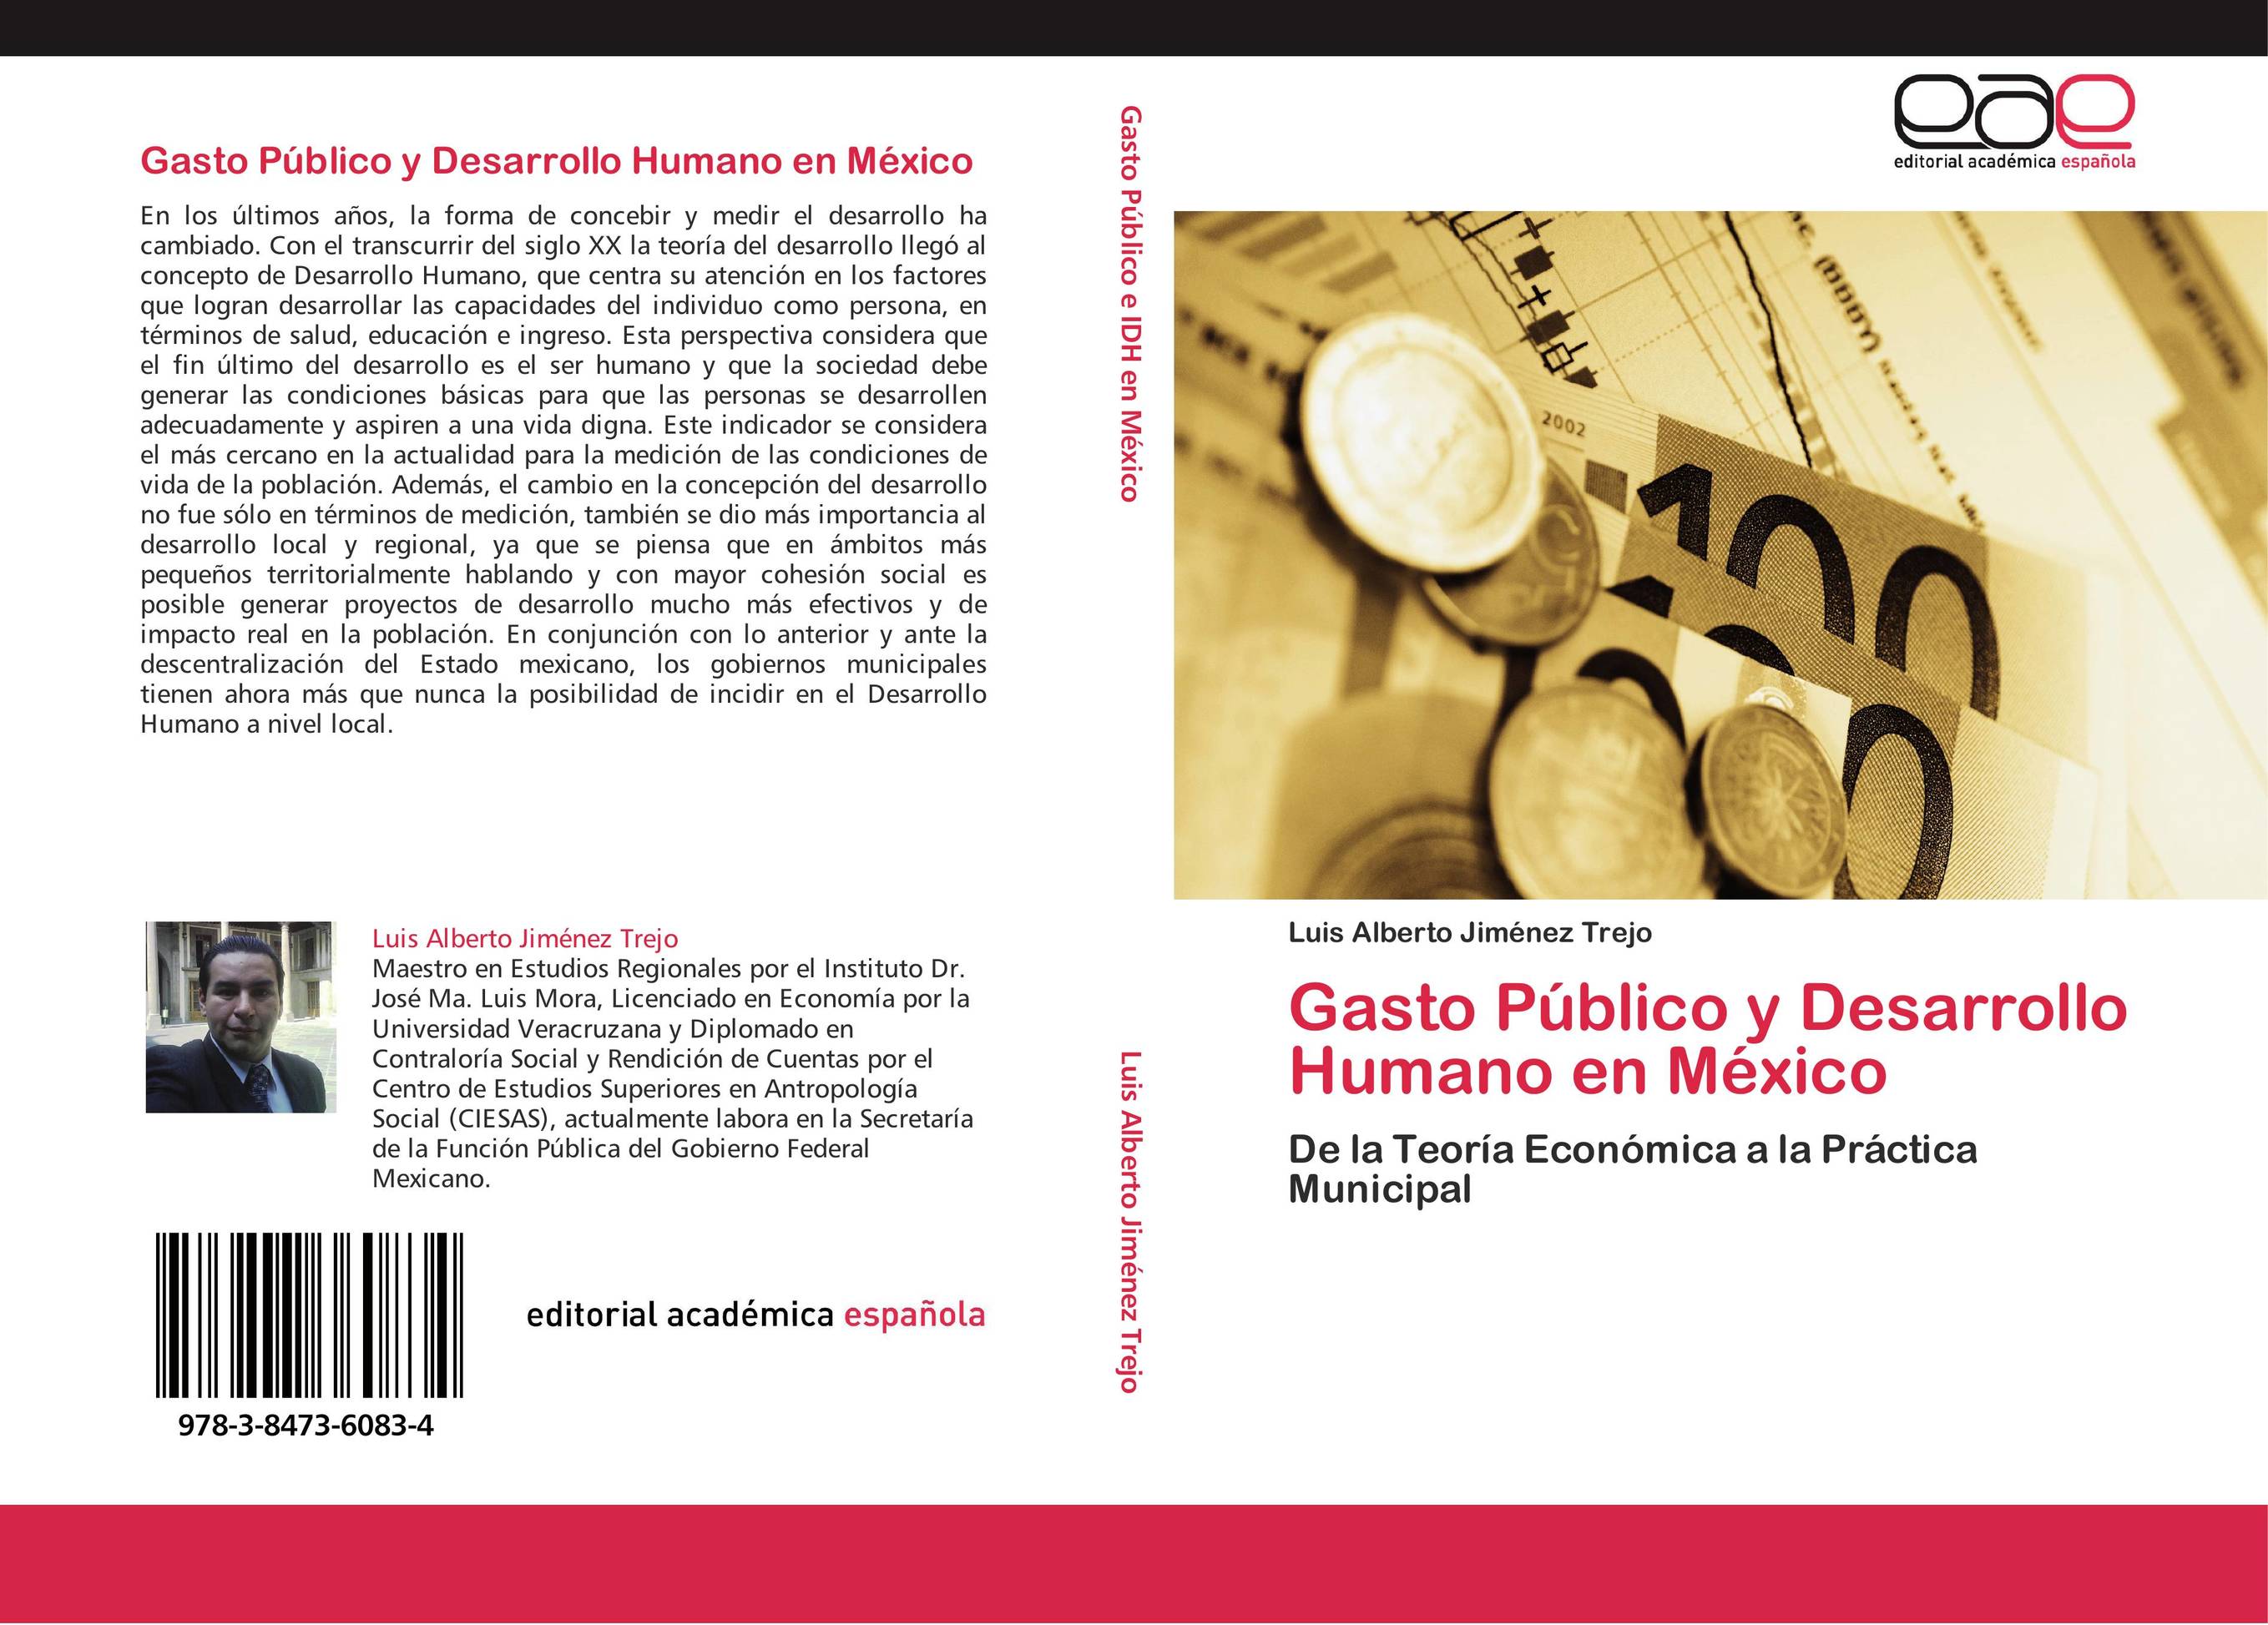 Gasto Público y Desarrollo Humano en México